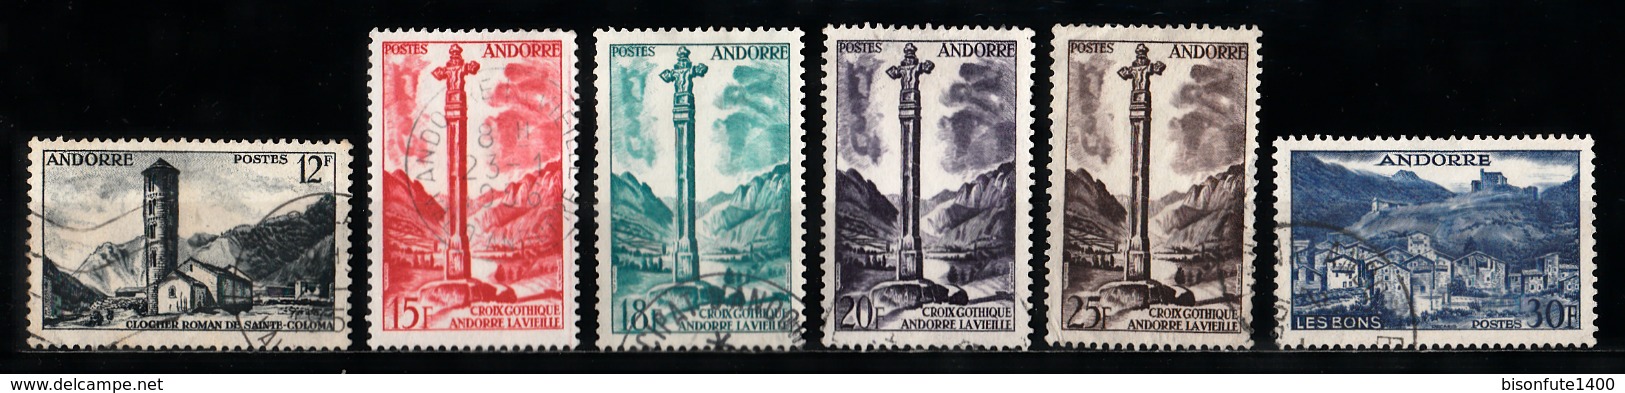 Andorre Français 1955 - 1958 : Timbres Yvert & Tellier N° 138 - 139 - 141 - 143 - 144 - 145 - 146 - 147 - 148 - 149 -... - Gebruikt